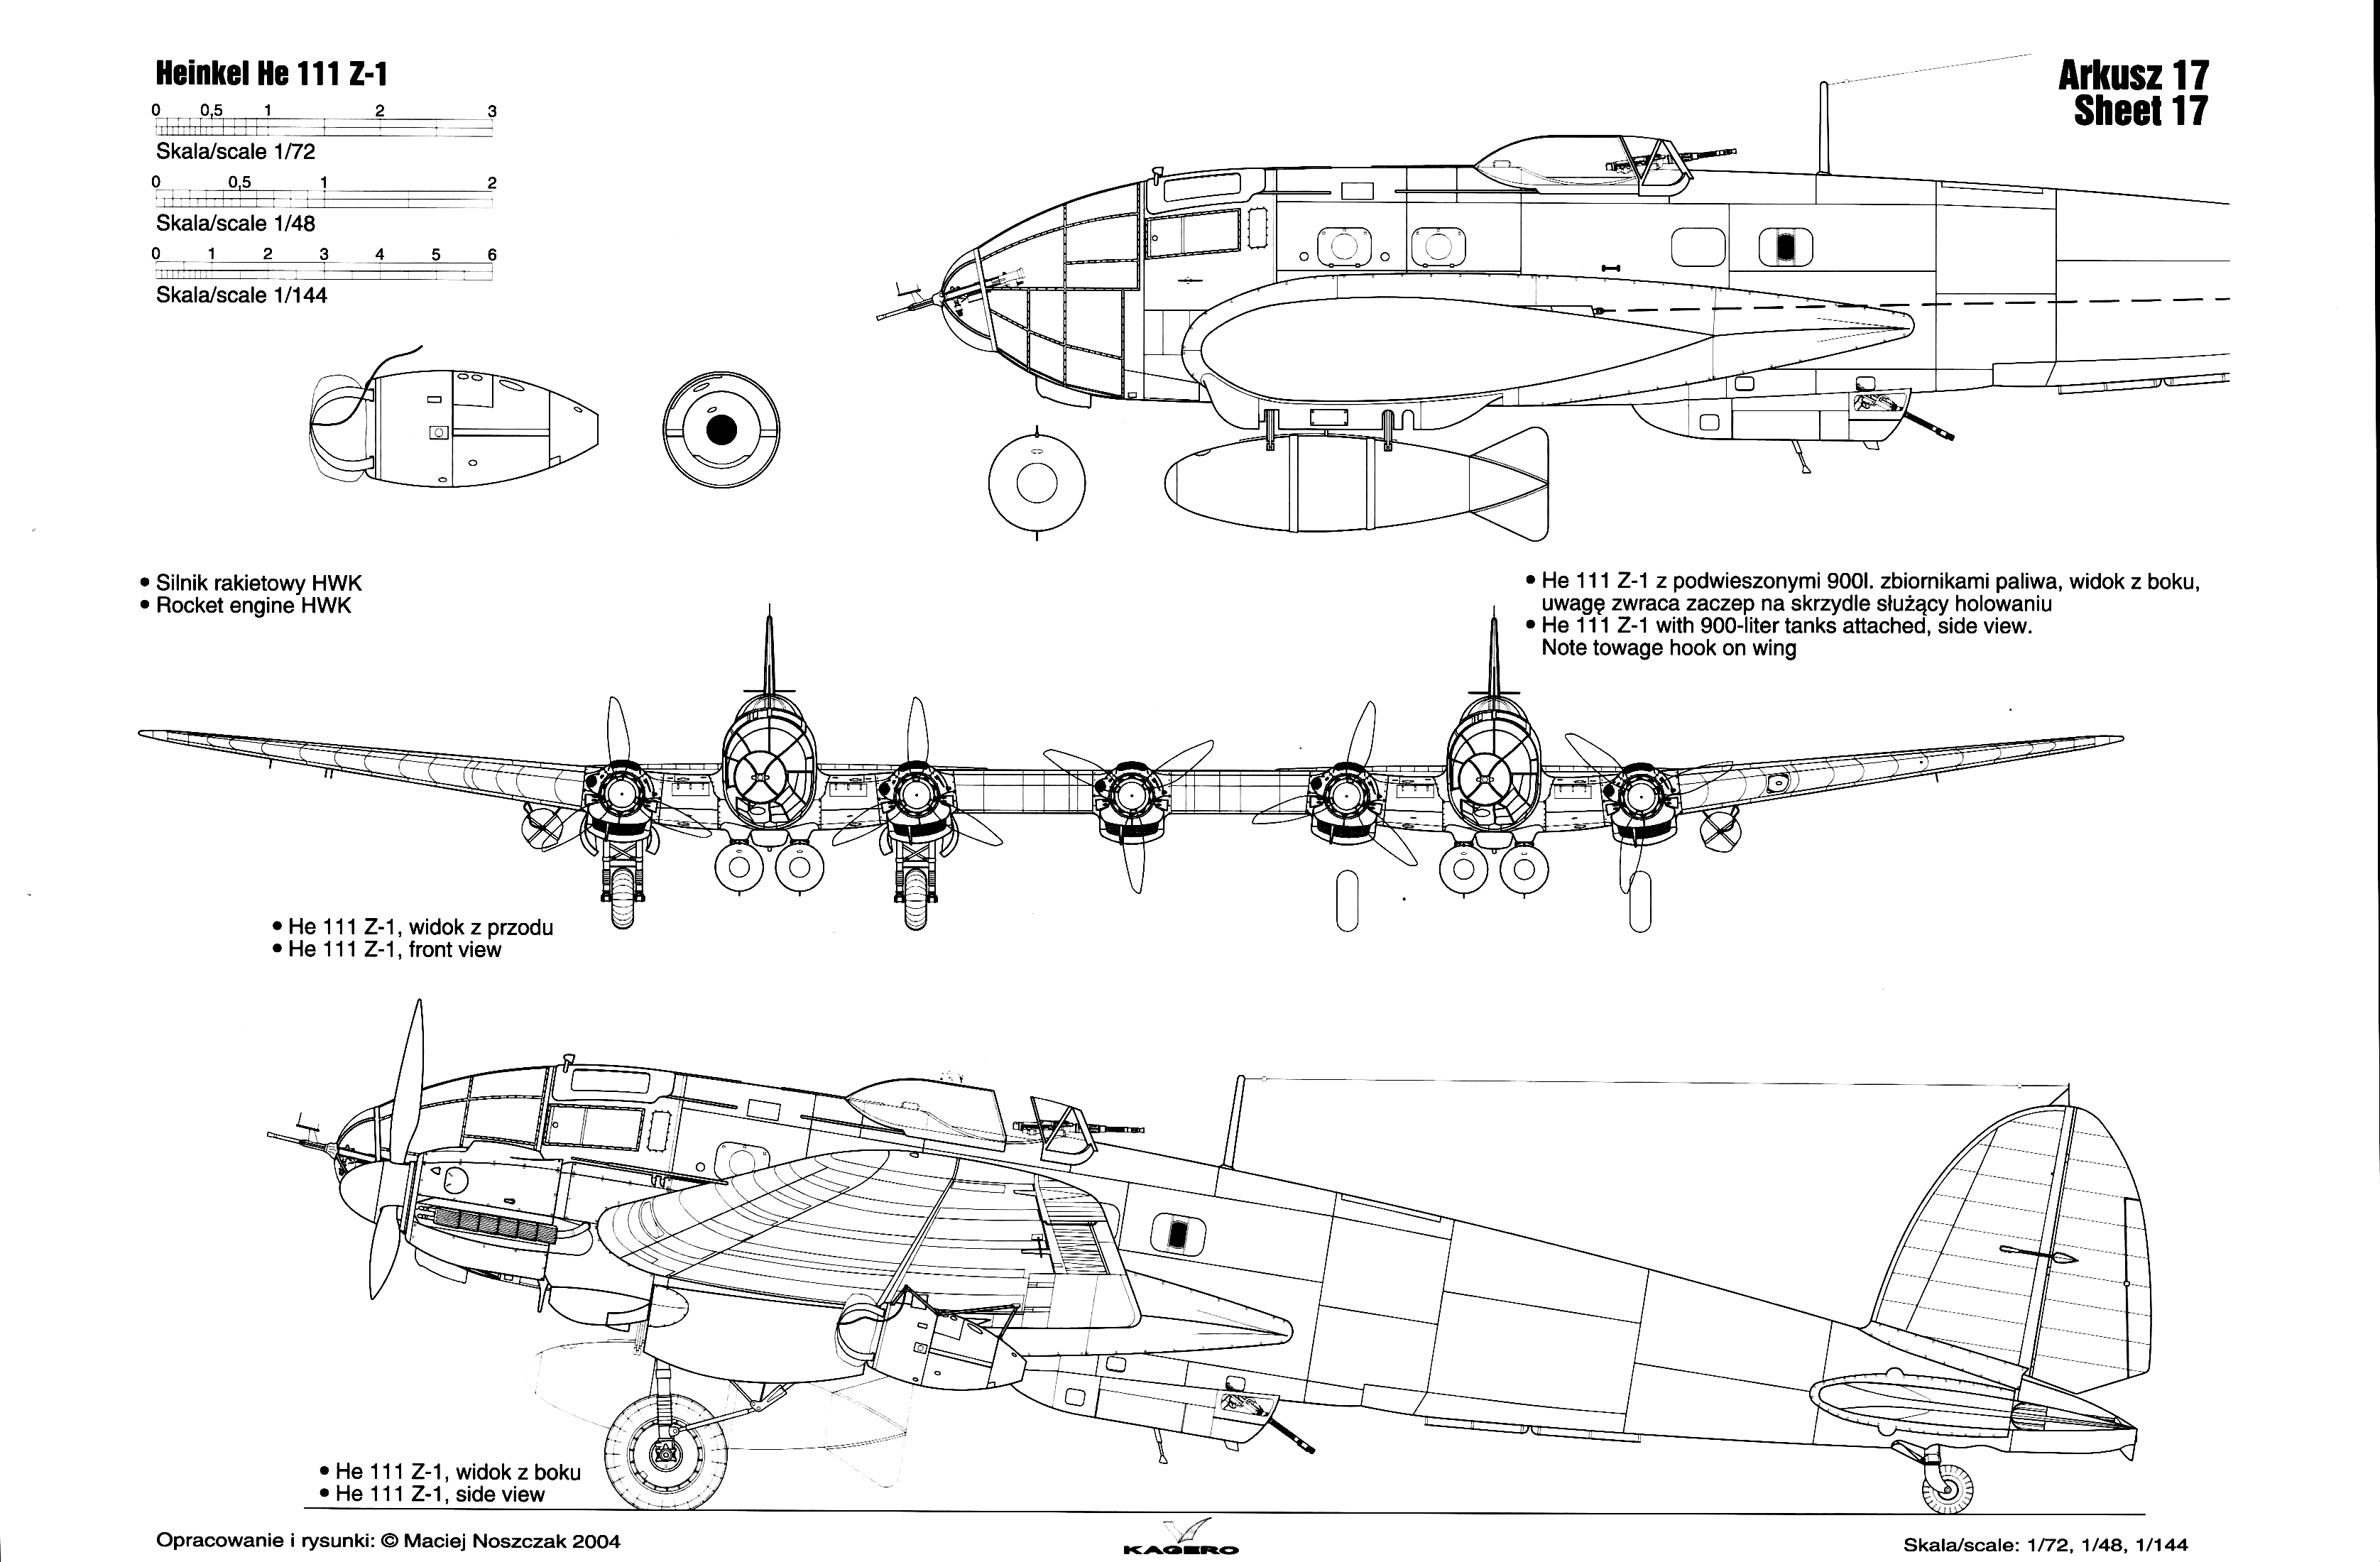 Asisbiz Artwork line drawing or blue print of a Heinkel He 111Z 